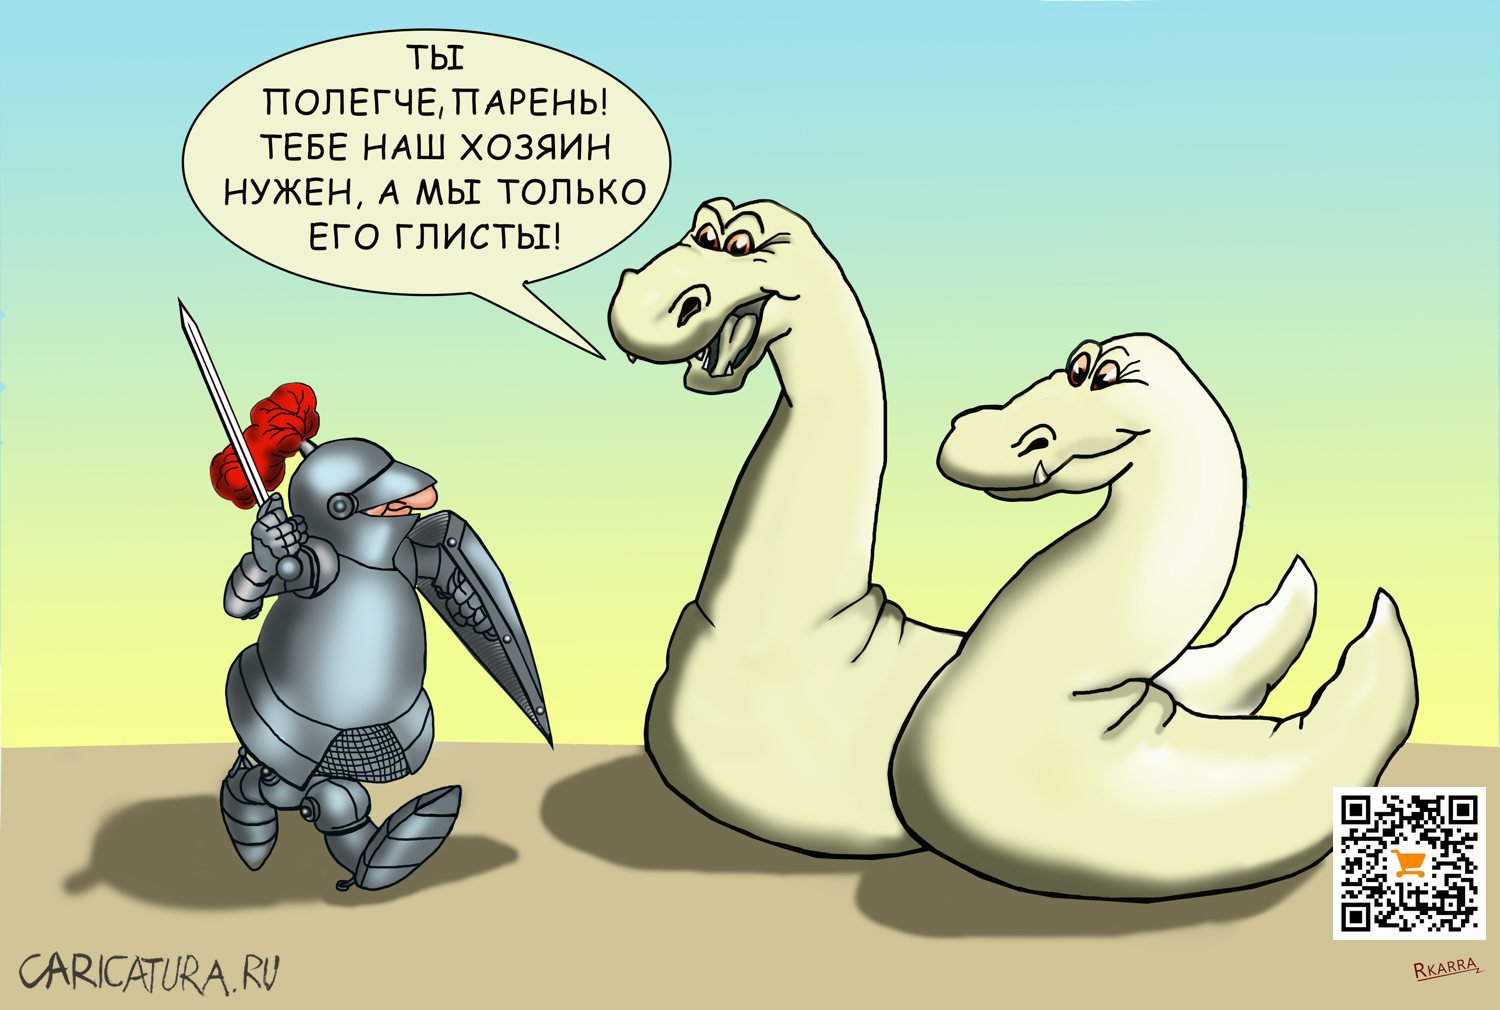 Карикатура "Глисты", Раф Карин